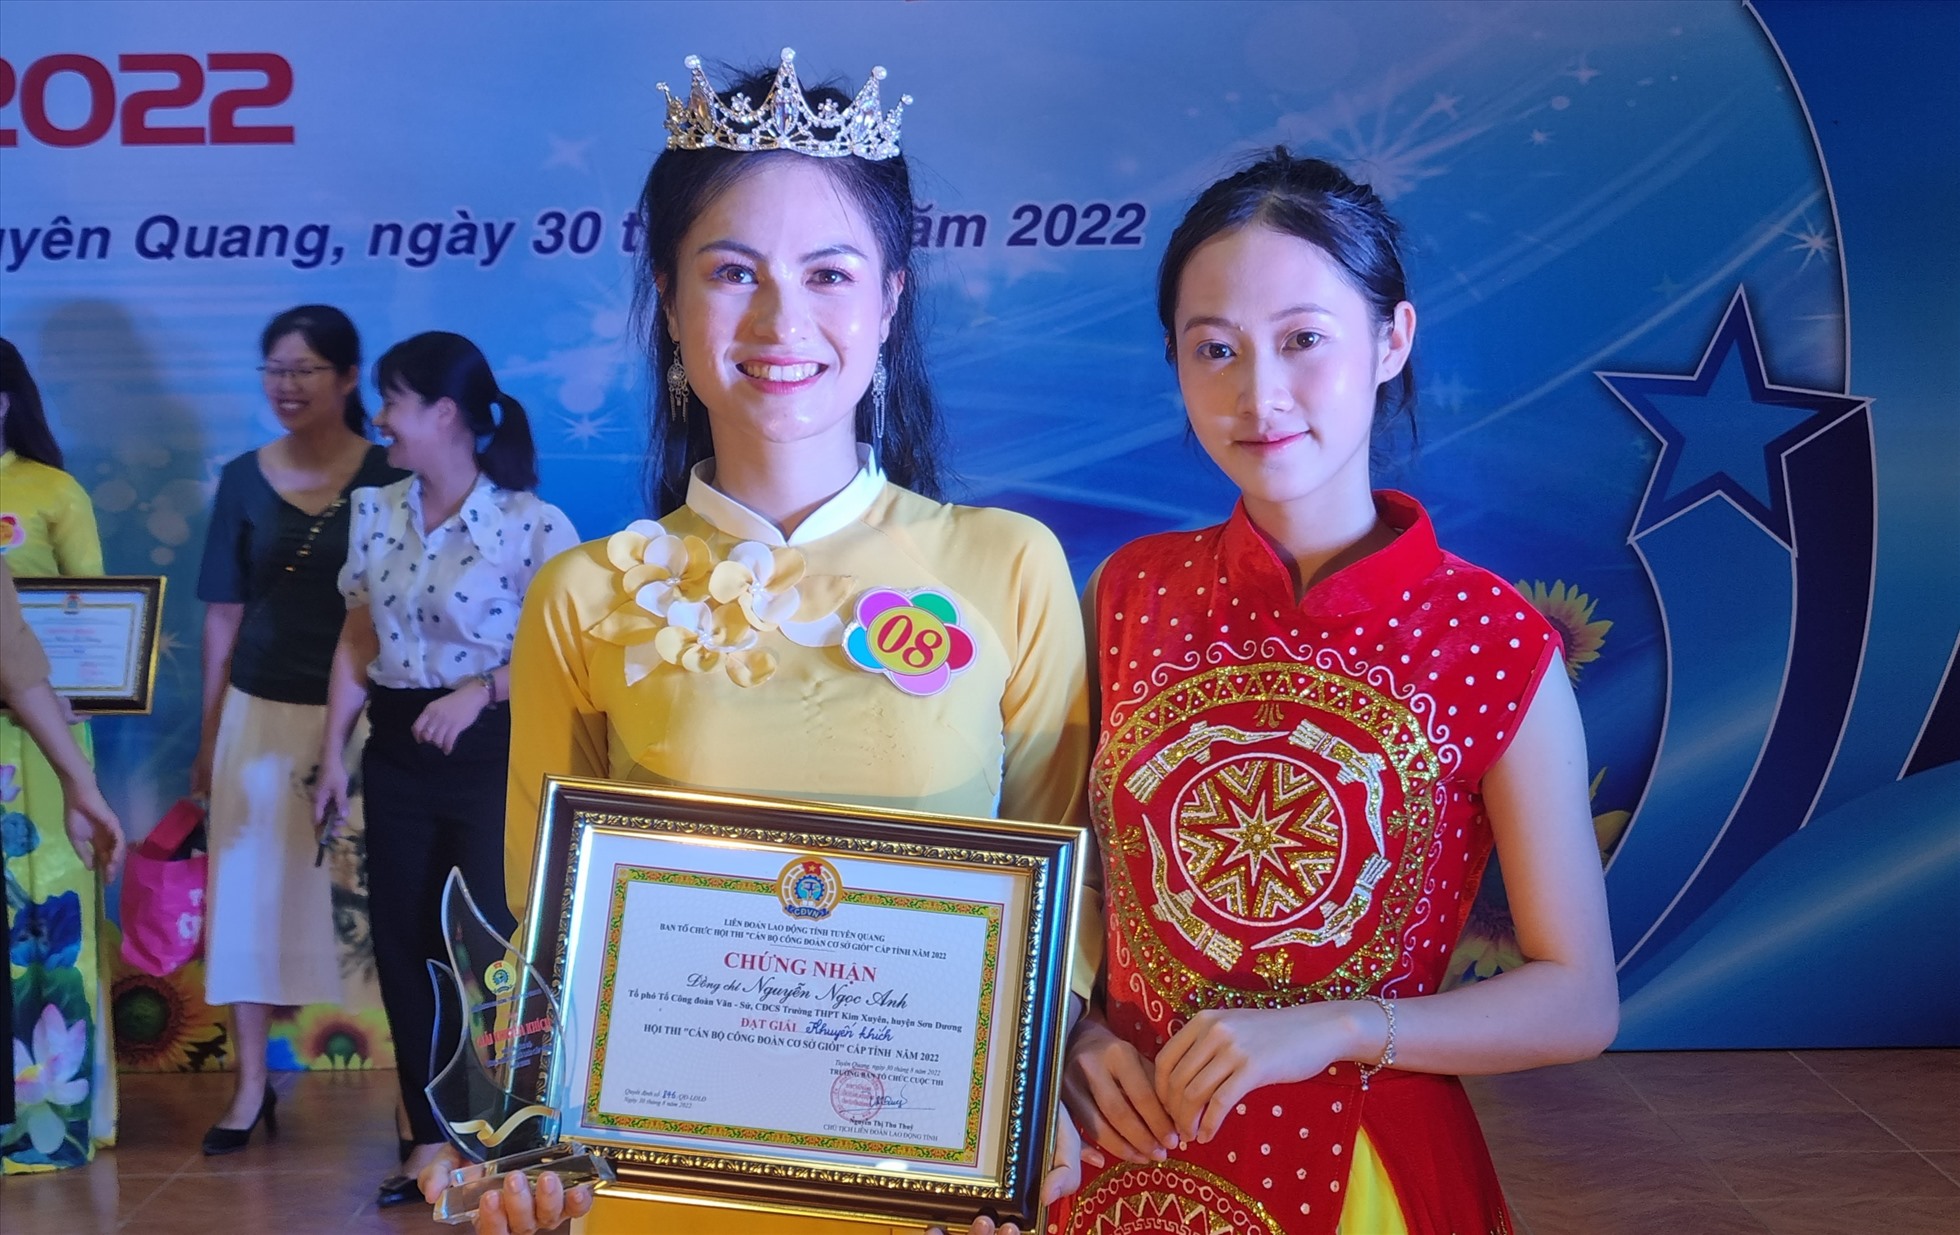 Thí sinh Nguyễn Ngọc Anh đạt giải khuyến khích hội thi Cán bộ Công đoàn cơ sở giỏi năm 2022. Ảnh: PM